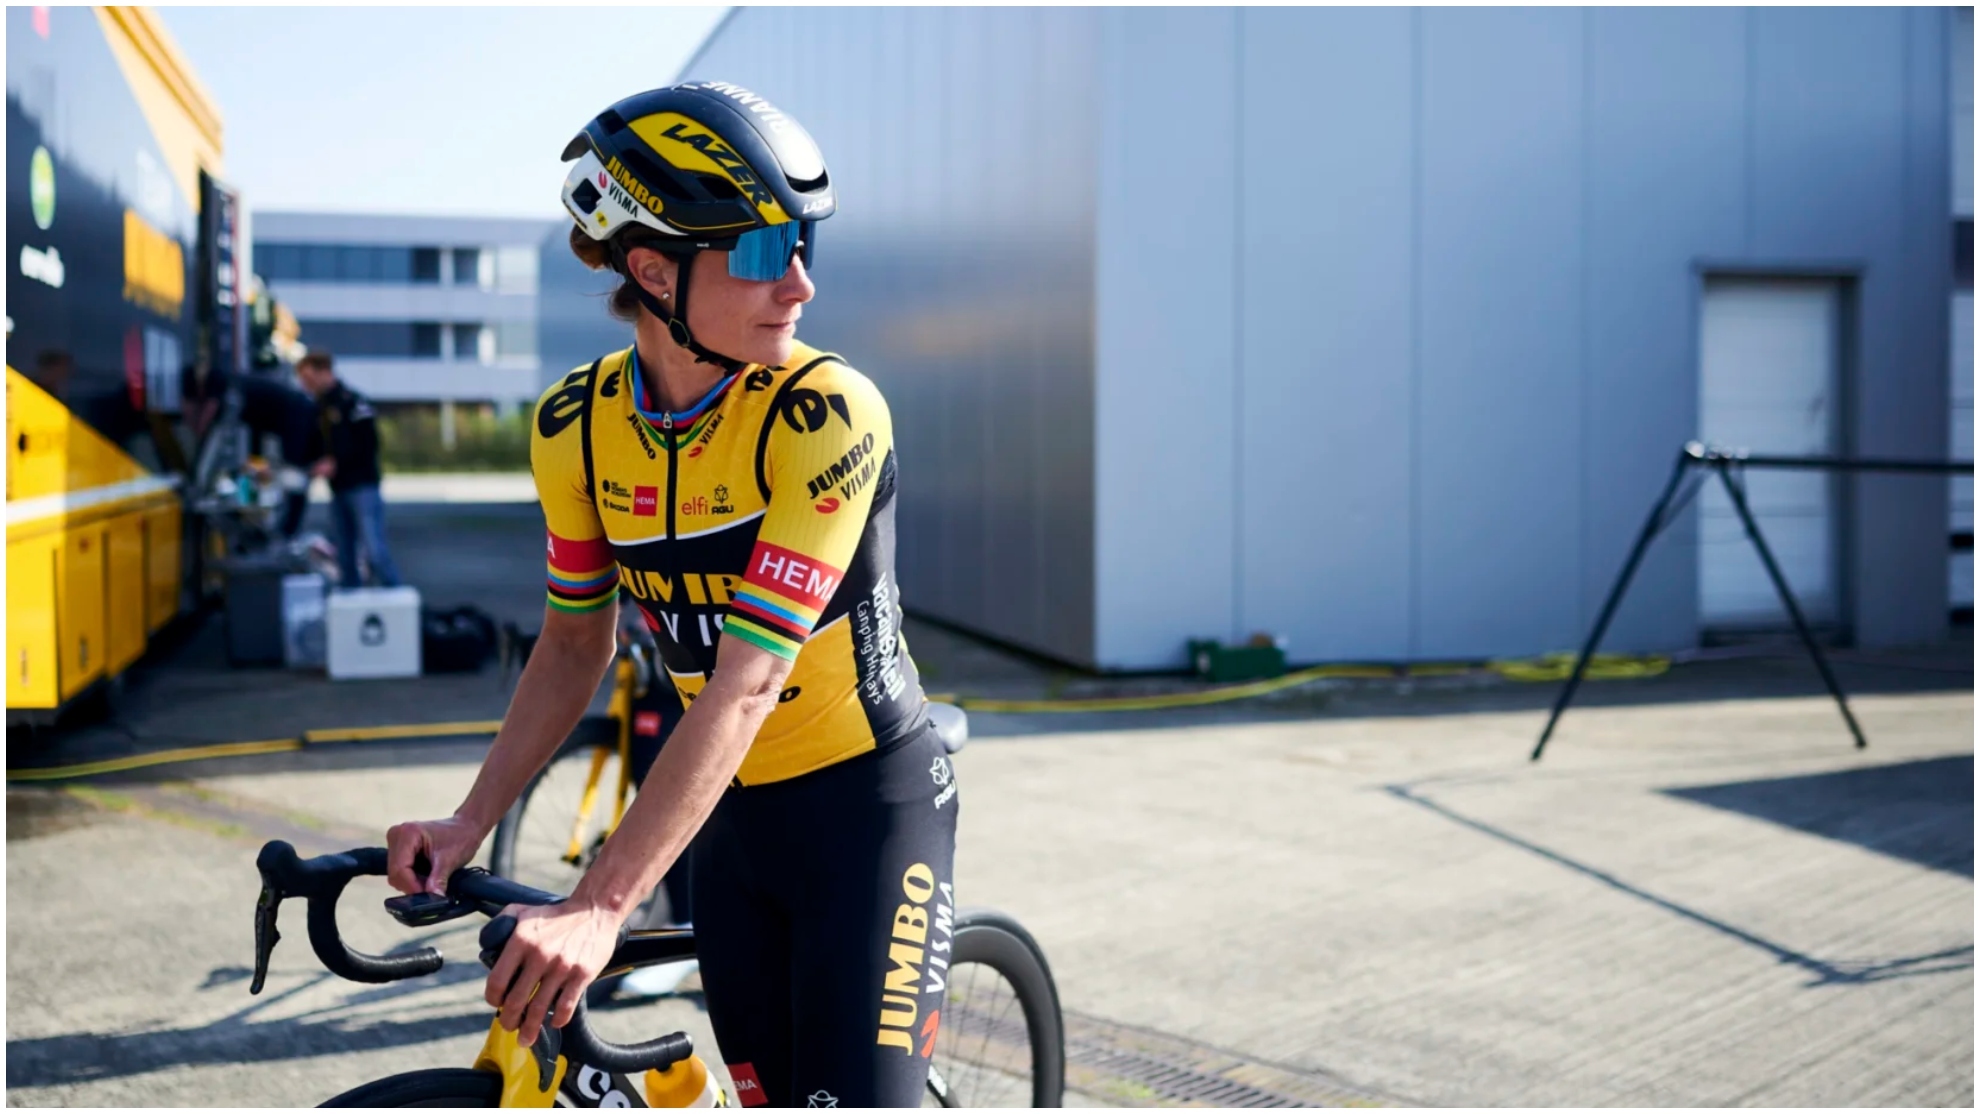 La holandesa Marianne Vos, positivo en covid, baja en la París-Roubaix